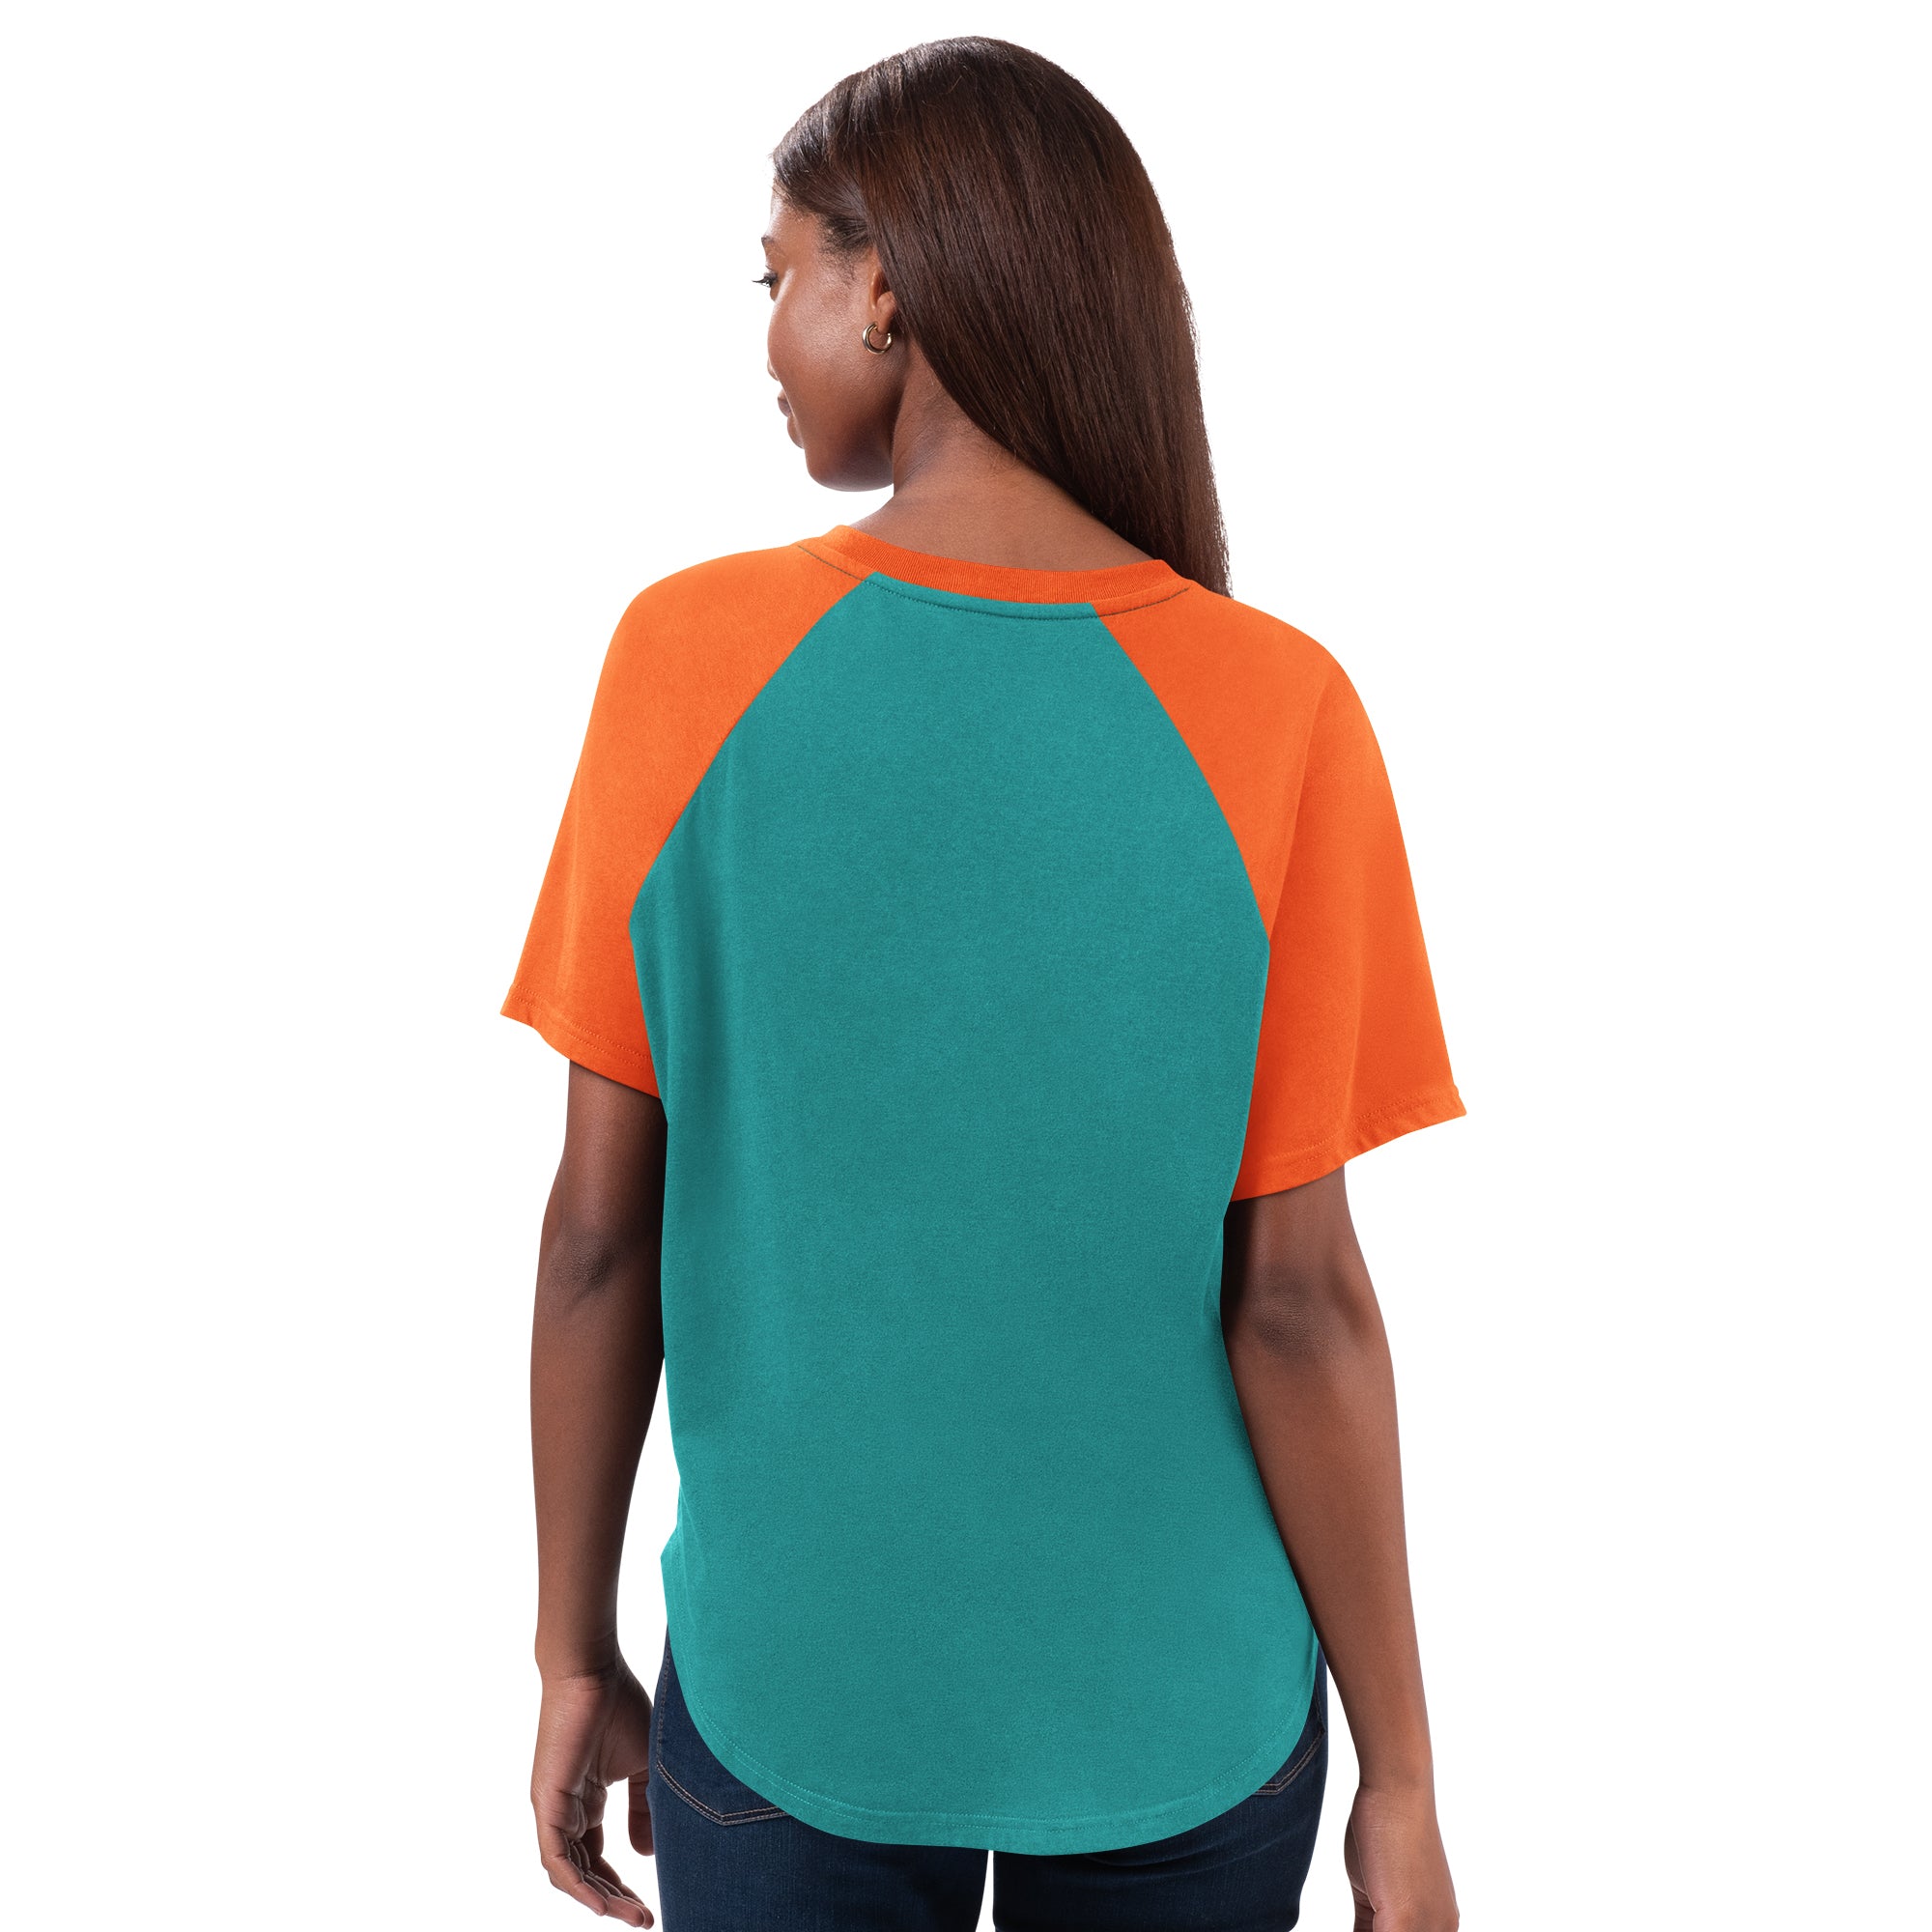 Miami Dolphins Glll 4Her Women's Rhinestone V-Neck T-Shirt - Aqua / Orange